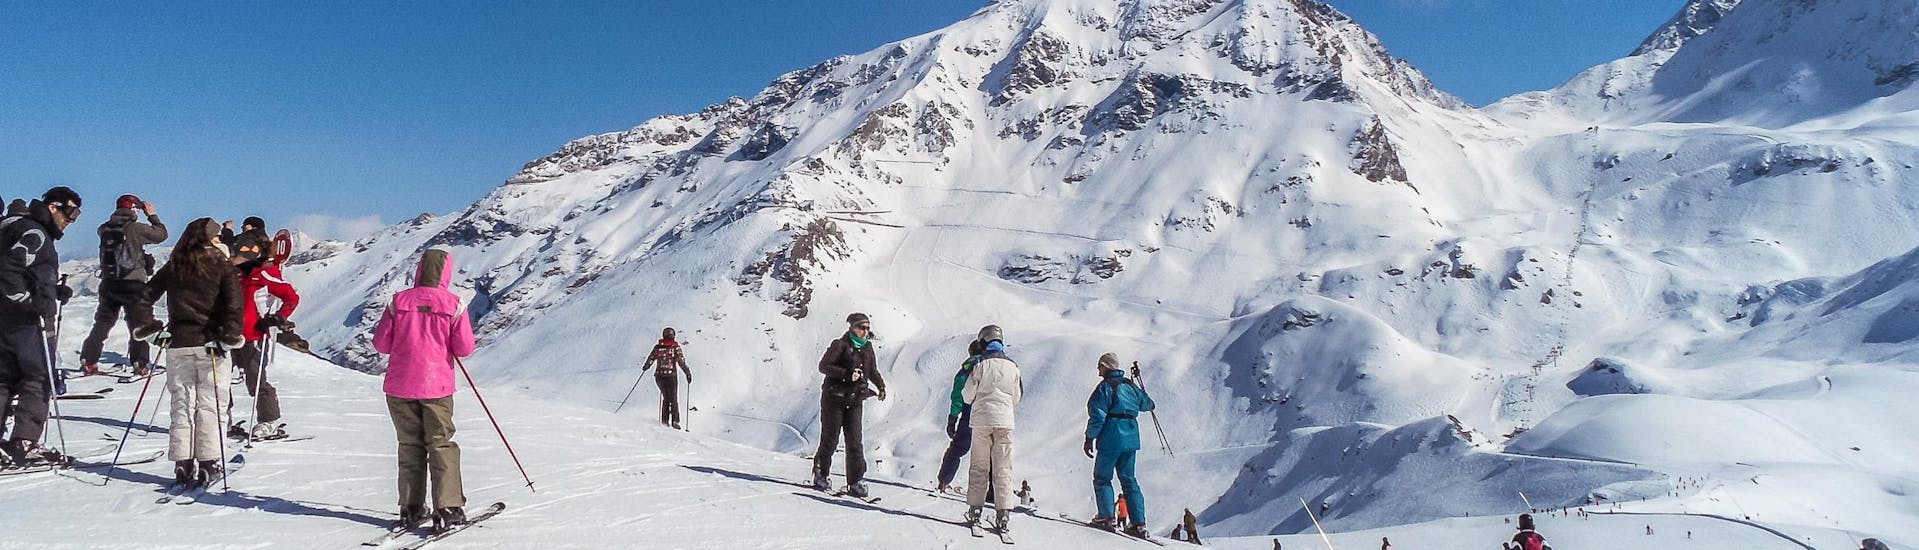 Vue sur le paysage de montagne ensoleillé de Arc 2000 où les écoles de ski locales proposent leurs cours de ski.